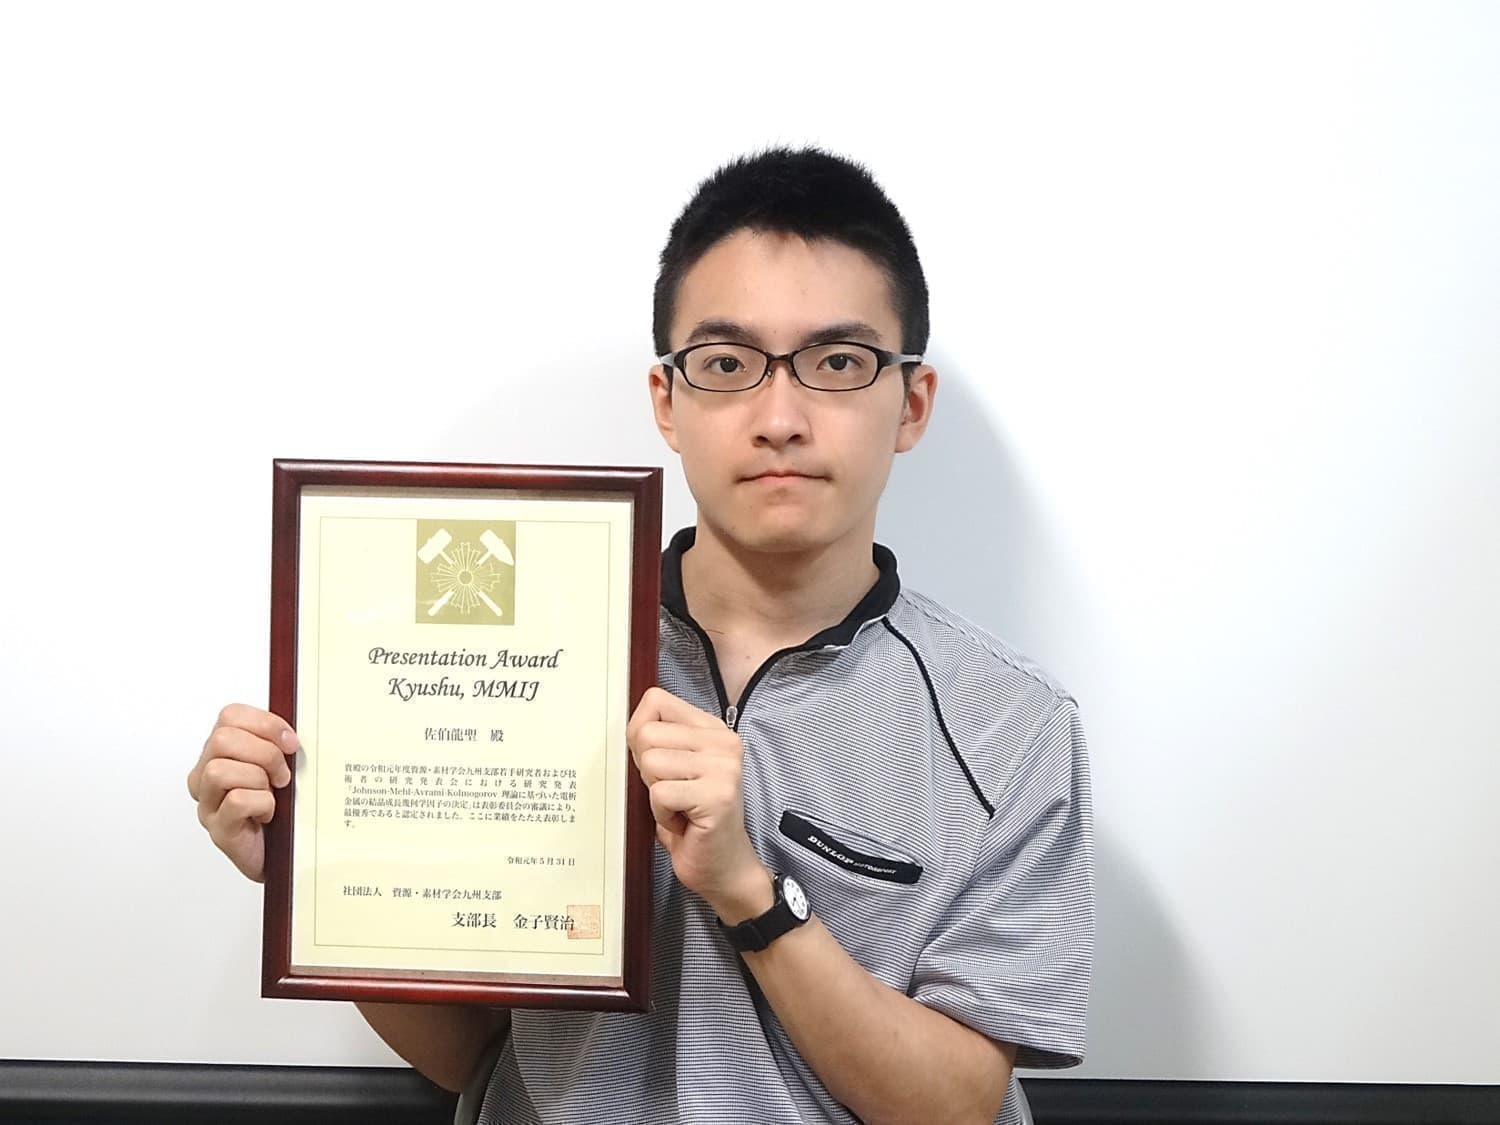 佐伯龍聖君(M2)が、資源・素材学会九州支部若手研究者および技術者の研究発表会において、Presentation Award Kyushu, MMIJを受賞しました。2019/05/31